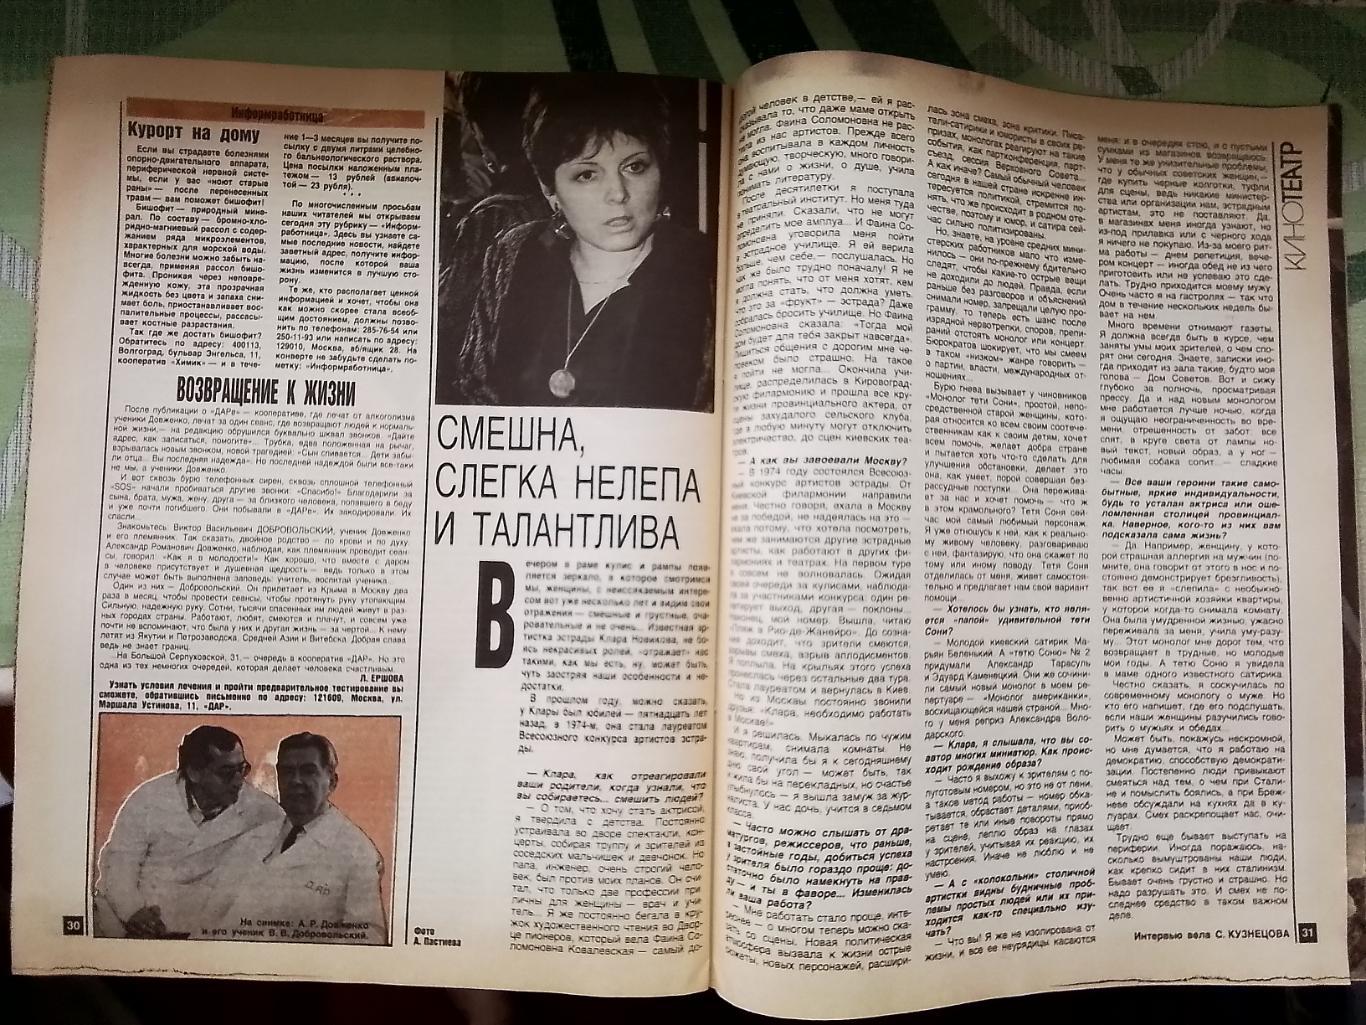 Журнал Работница № 7 1990 Женский монастырь Клара Новикова 7